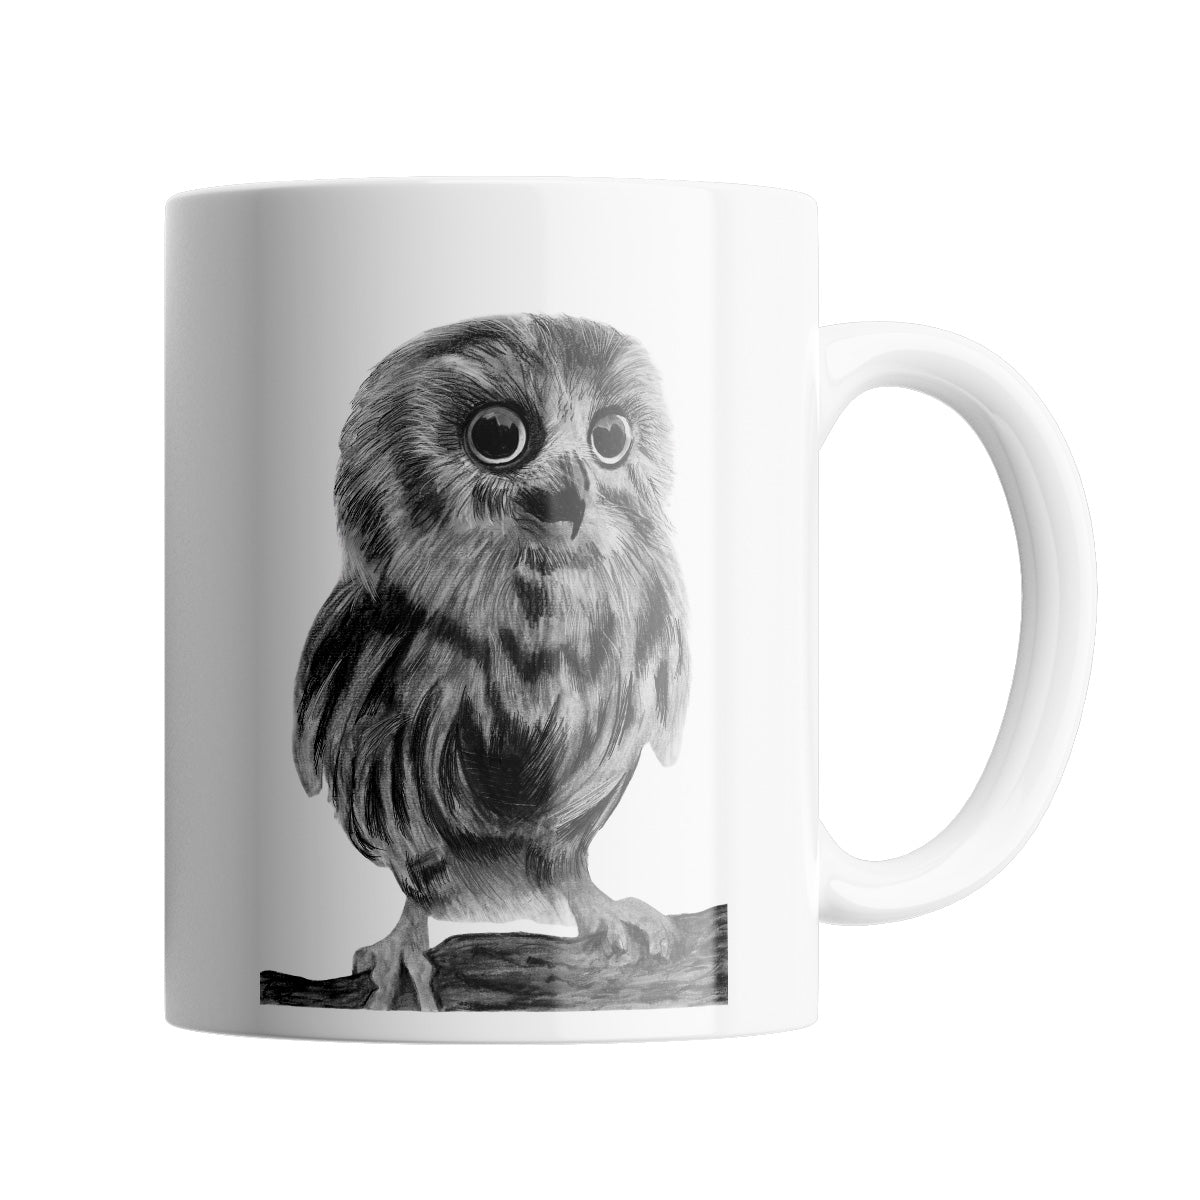 Owl 11 oz Ceramic Mug From Libra Fine Arts